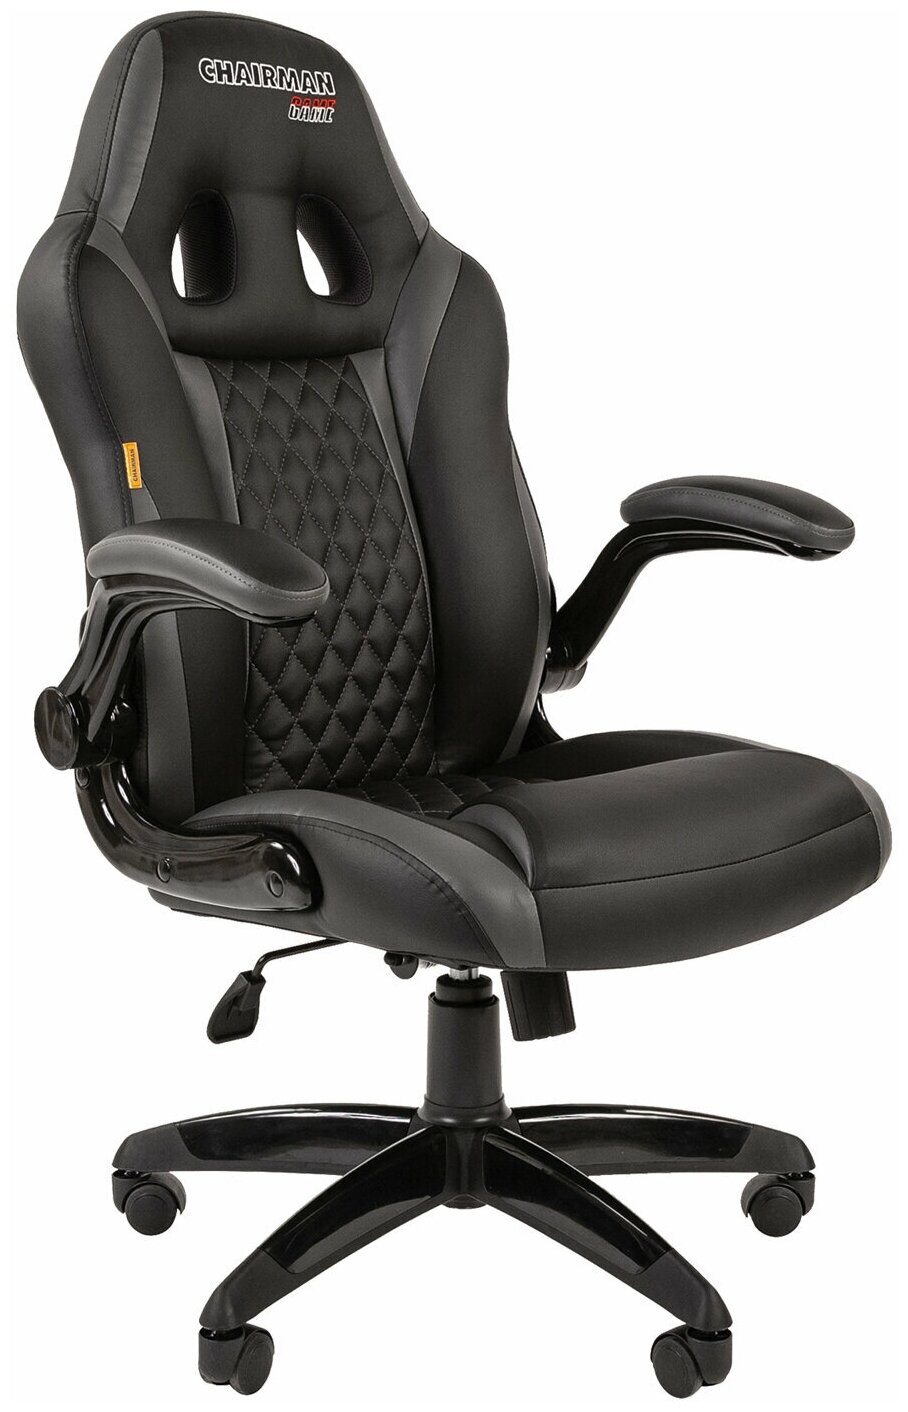 Кресло компьютерное СН GAME 15, экокожа, черное/серое /Квант продажи 1 ед./